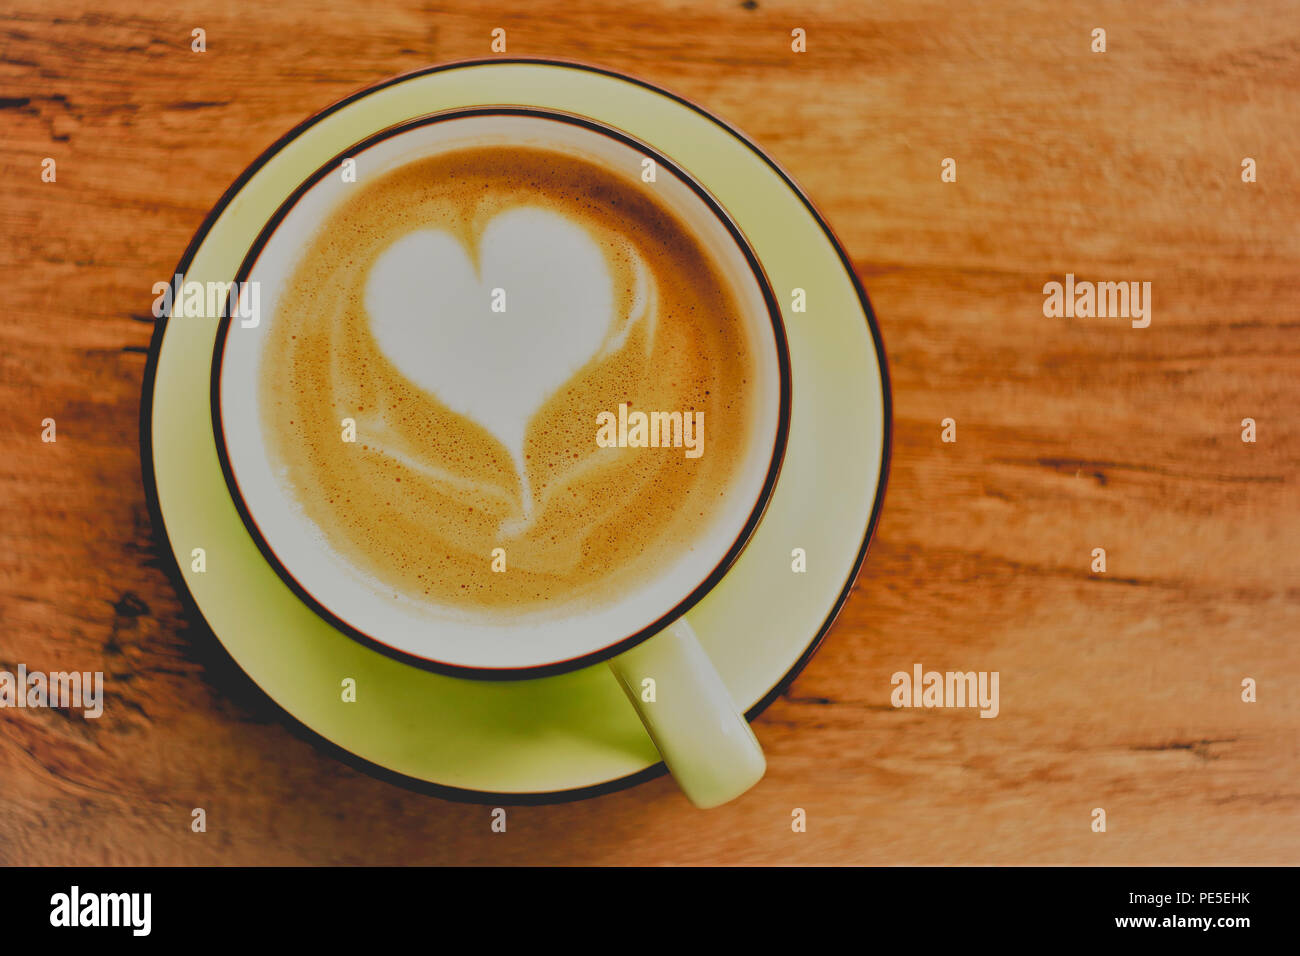 Cappuccino café caliente con forma de corazón de espuma en el fondo de la tabla de madera Foto de stock